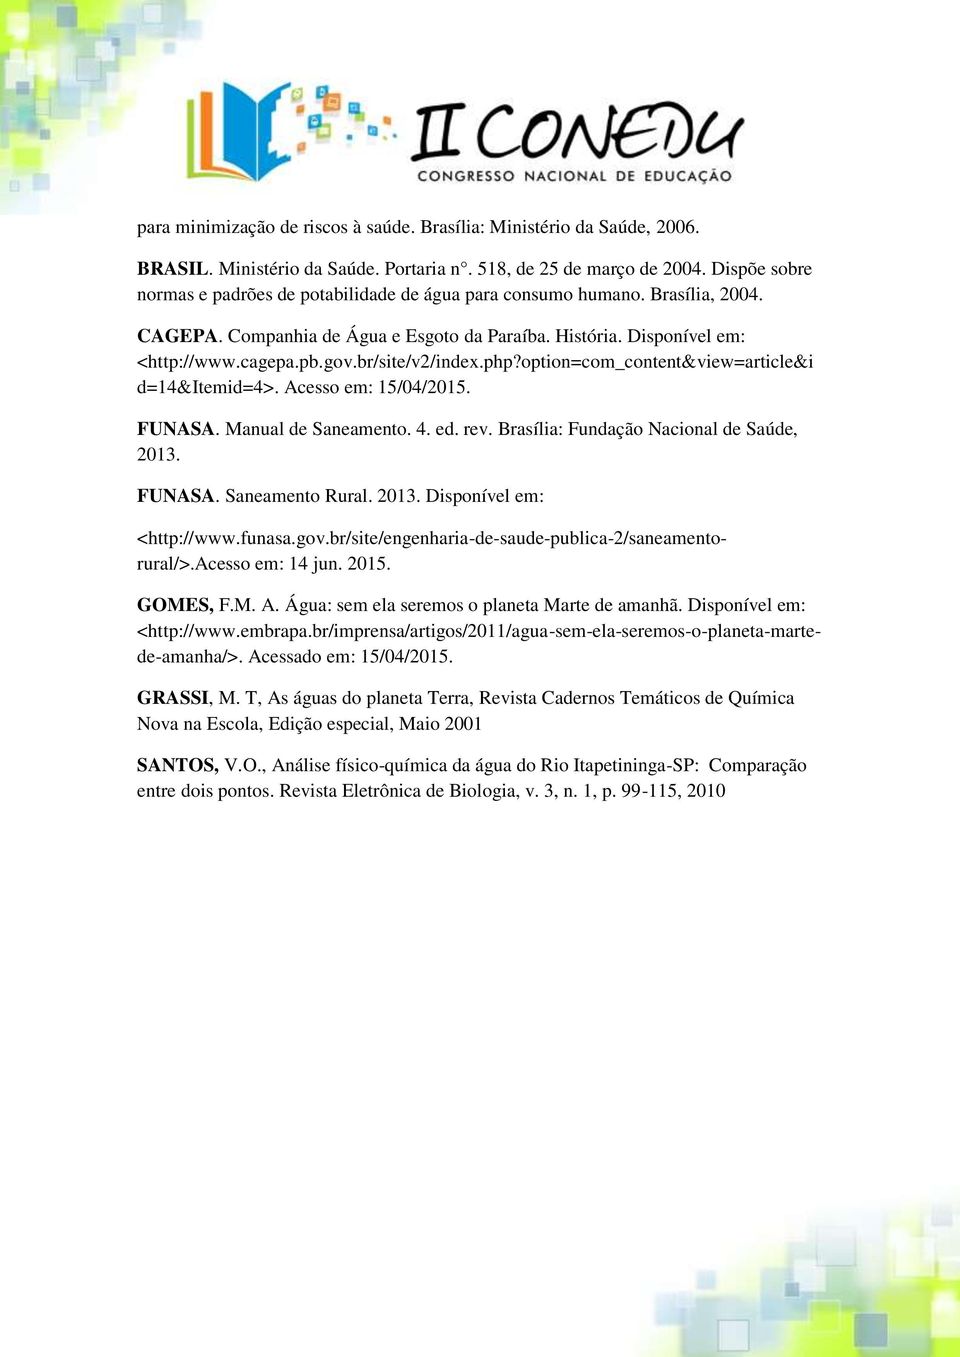 br/site/v2/index.php?option=com_content&view=article&i d=14&itemid=4>. Acesso em: 15/04/. FUNASA. Manual de Saneamento. 4. ed. rev. Brasília: Fundação Nacional de Saúde, 2013. FUNASA. Saneamento Rural.